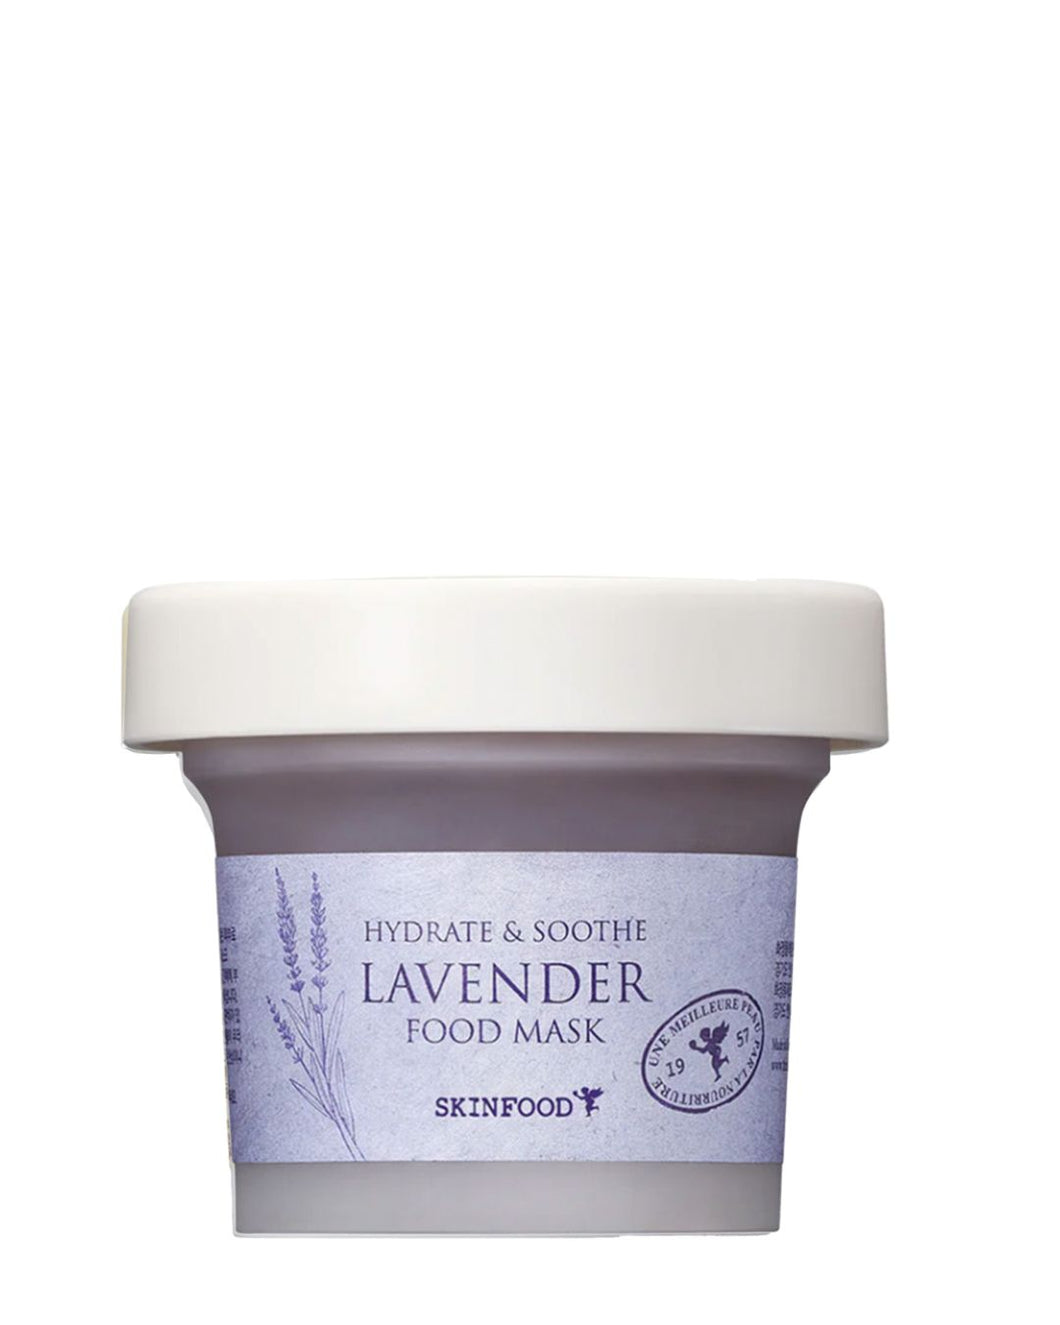 SKINFOOD - Lavender Food Mask - 120g